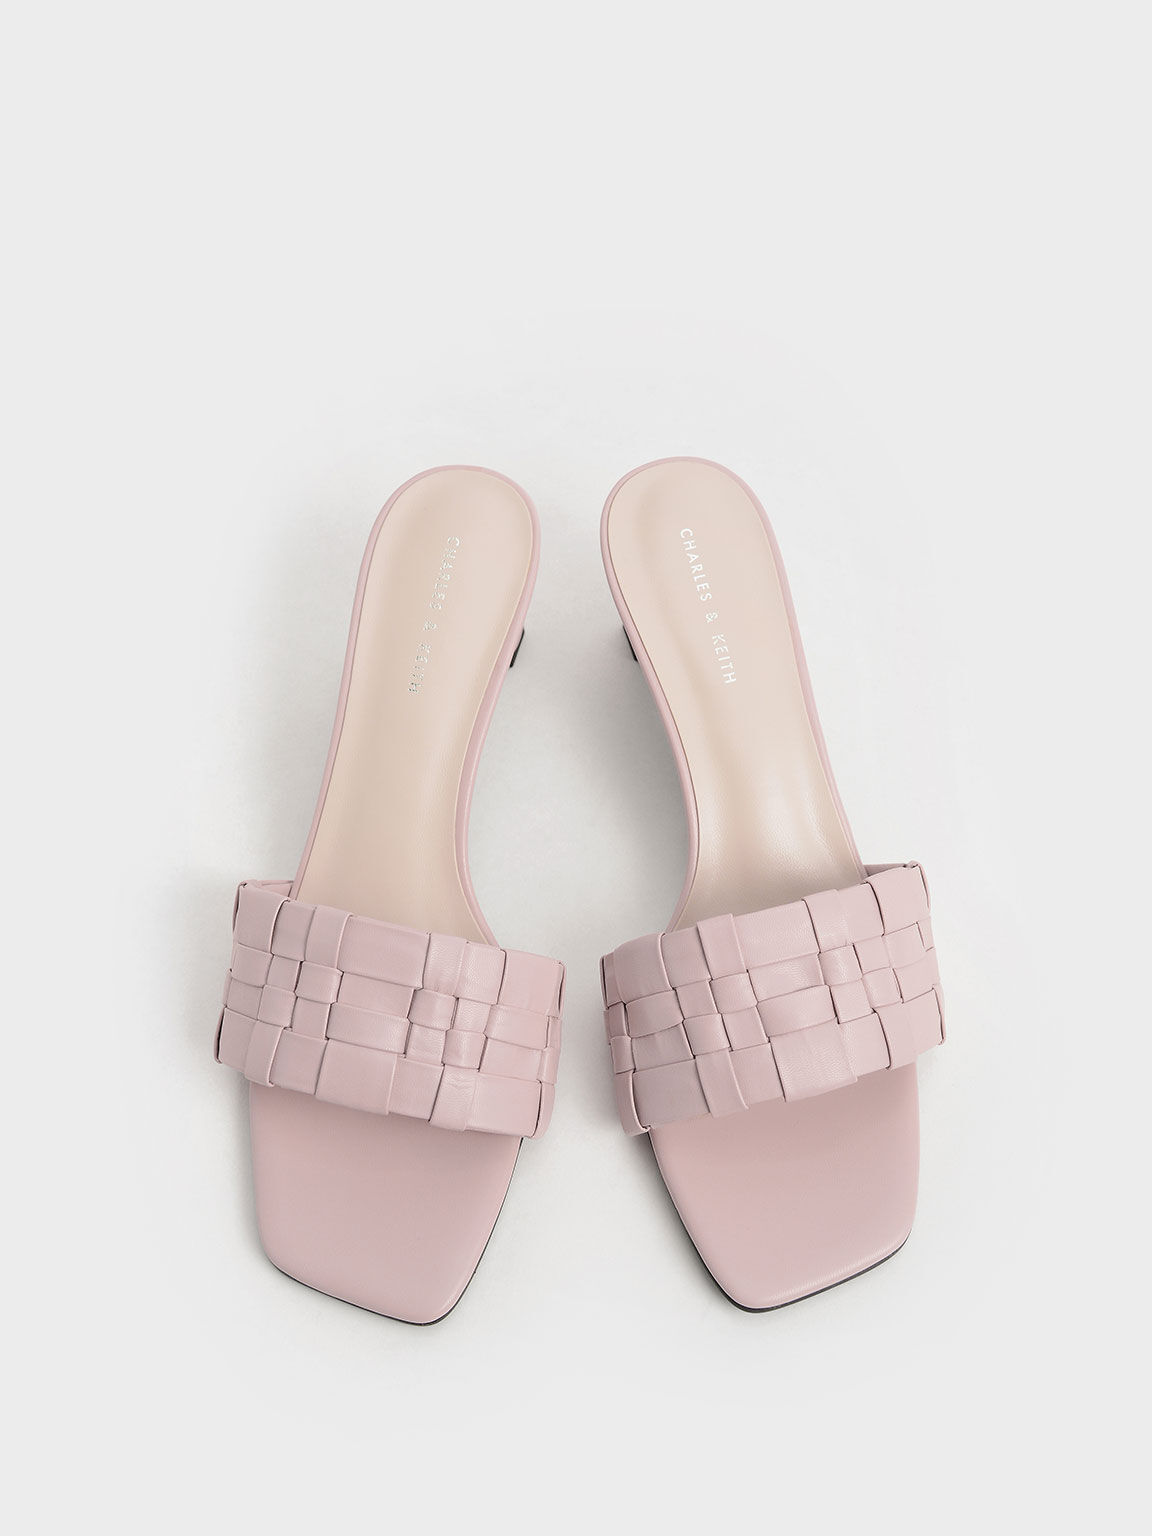 Sandal Mules Woven Square Toe, Light Pink, hi-res